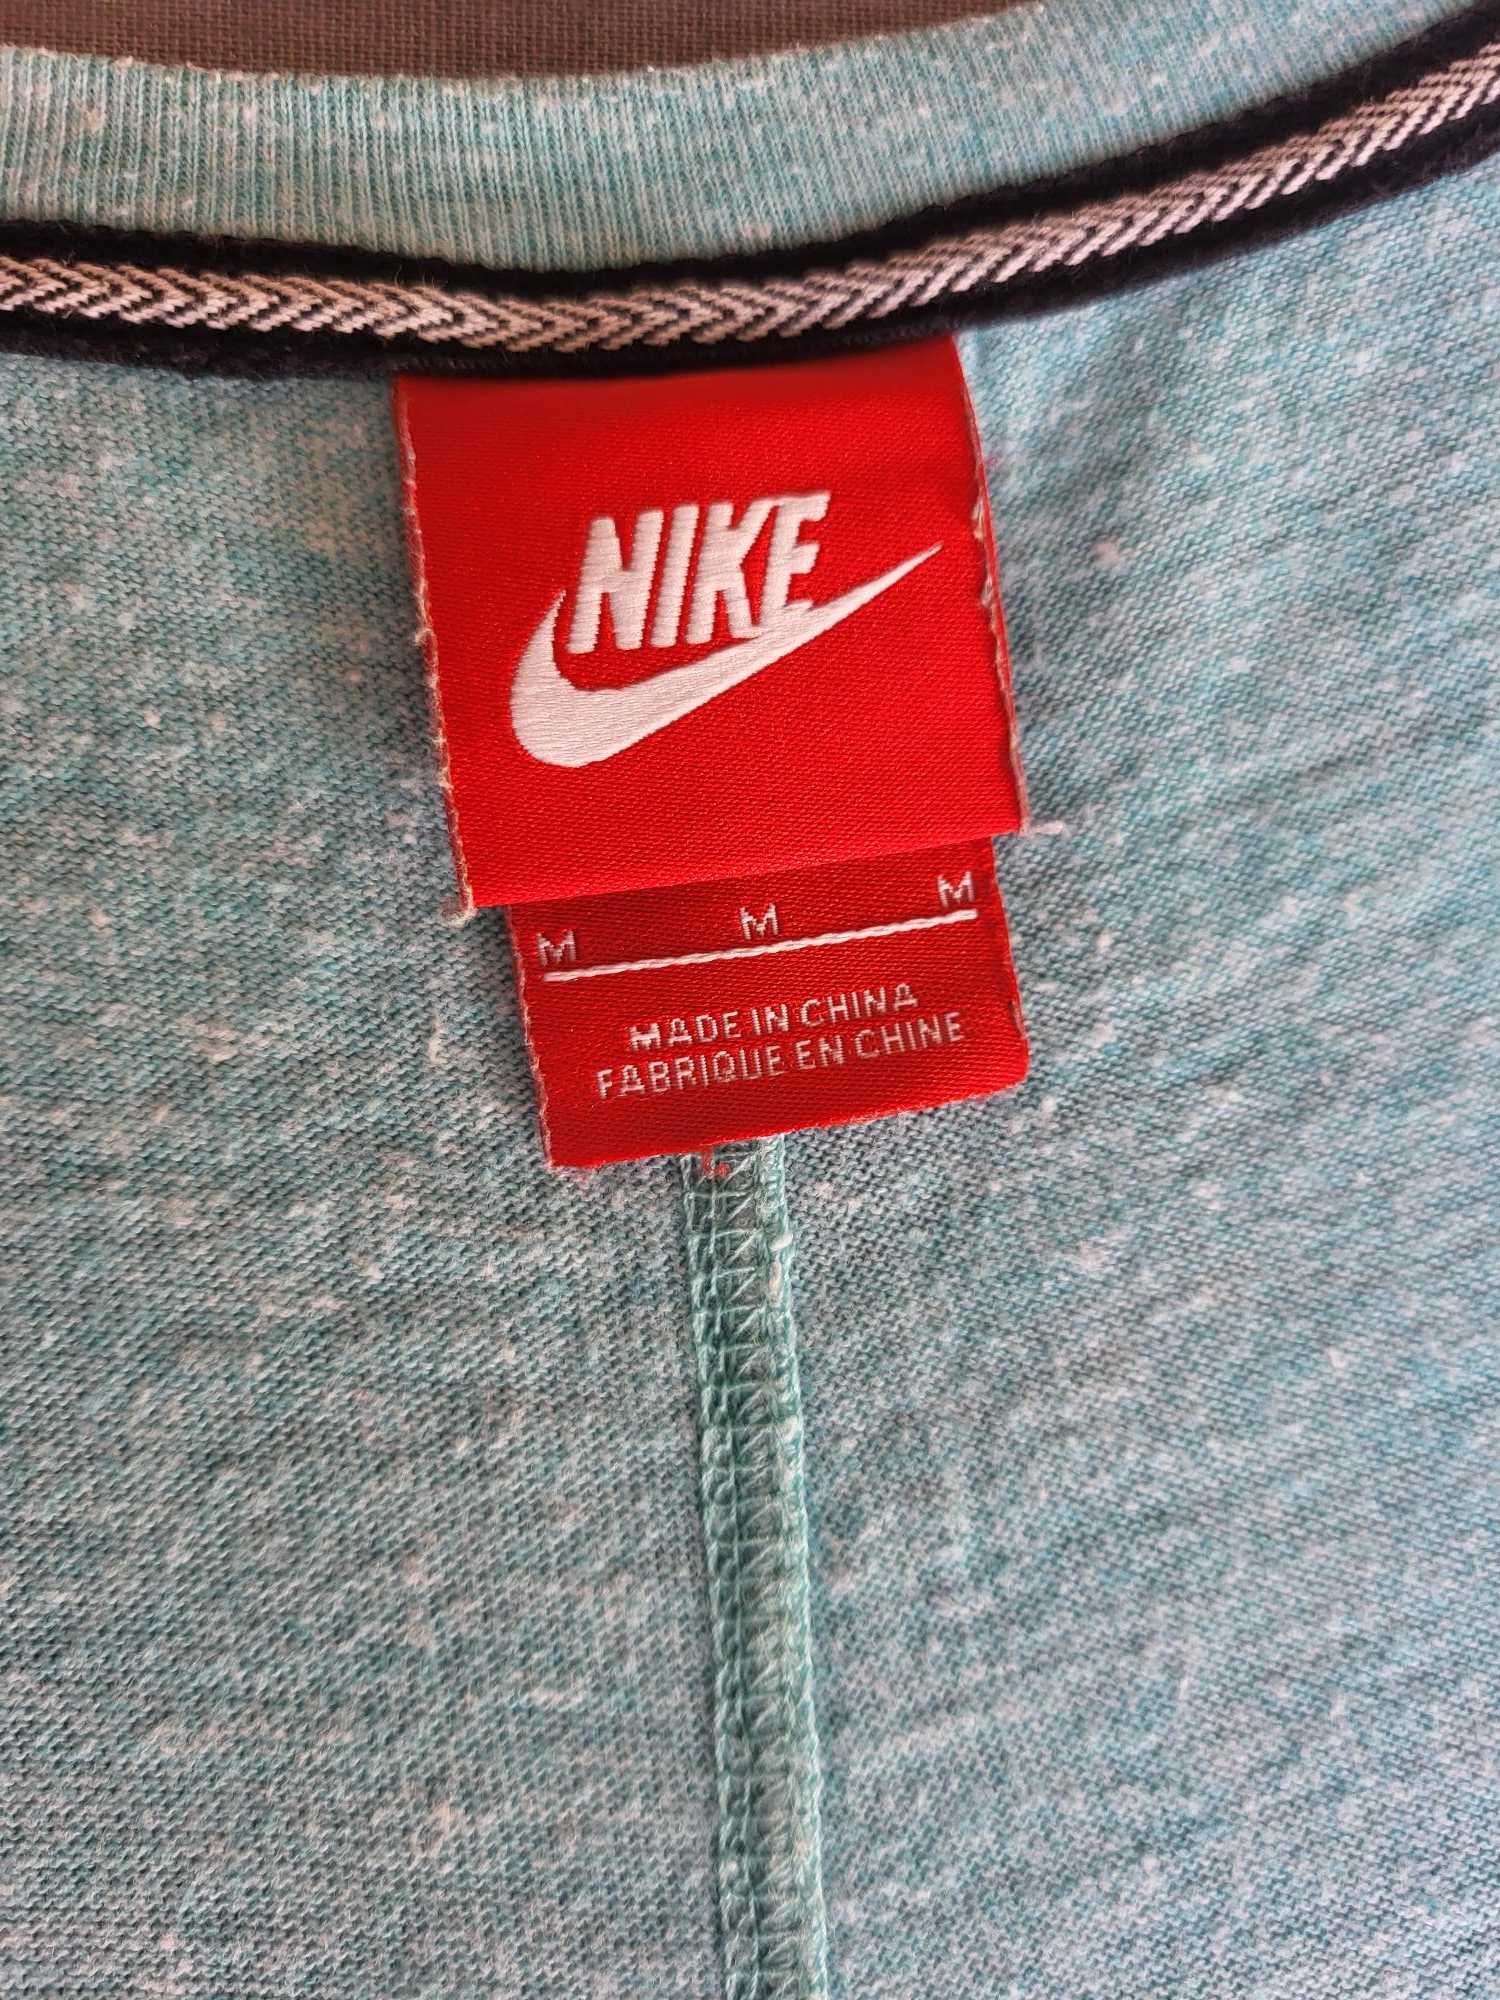 Bluza Nike rozmiar M (turkusowa)